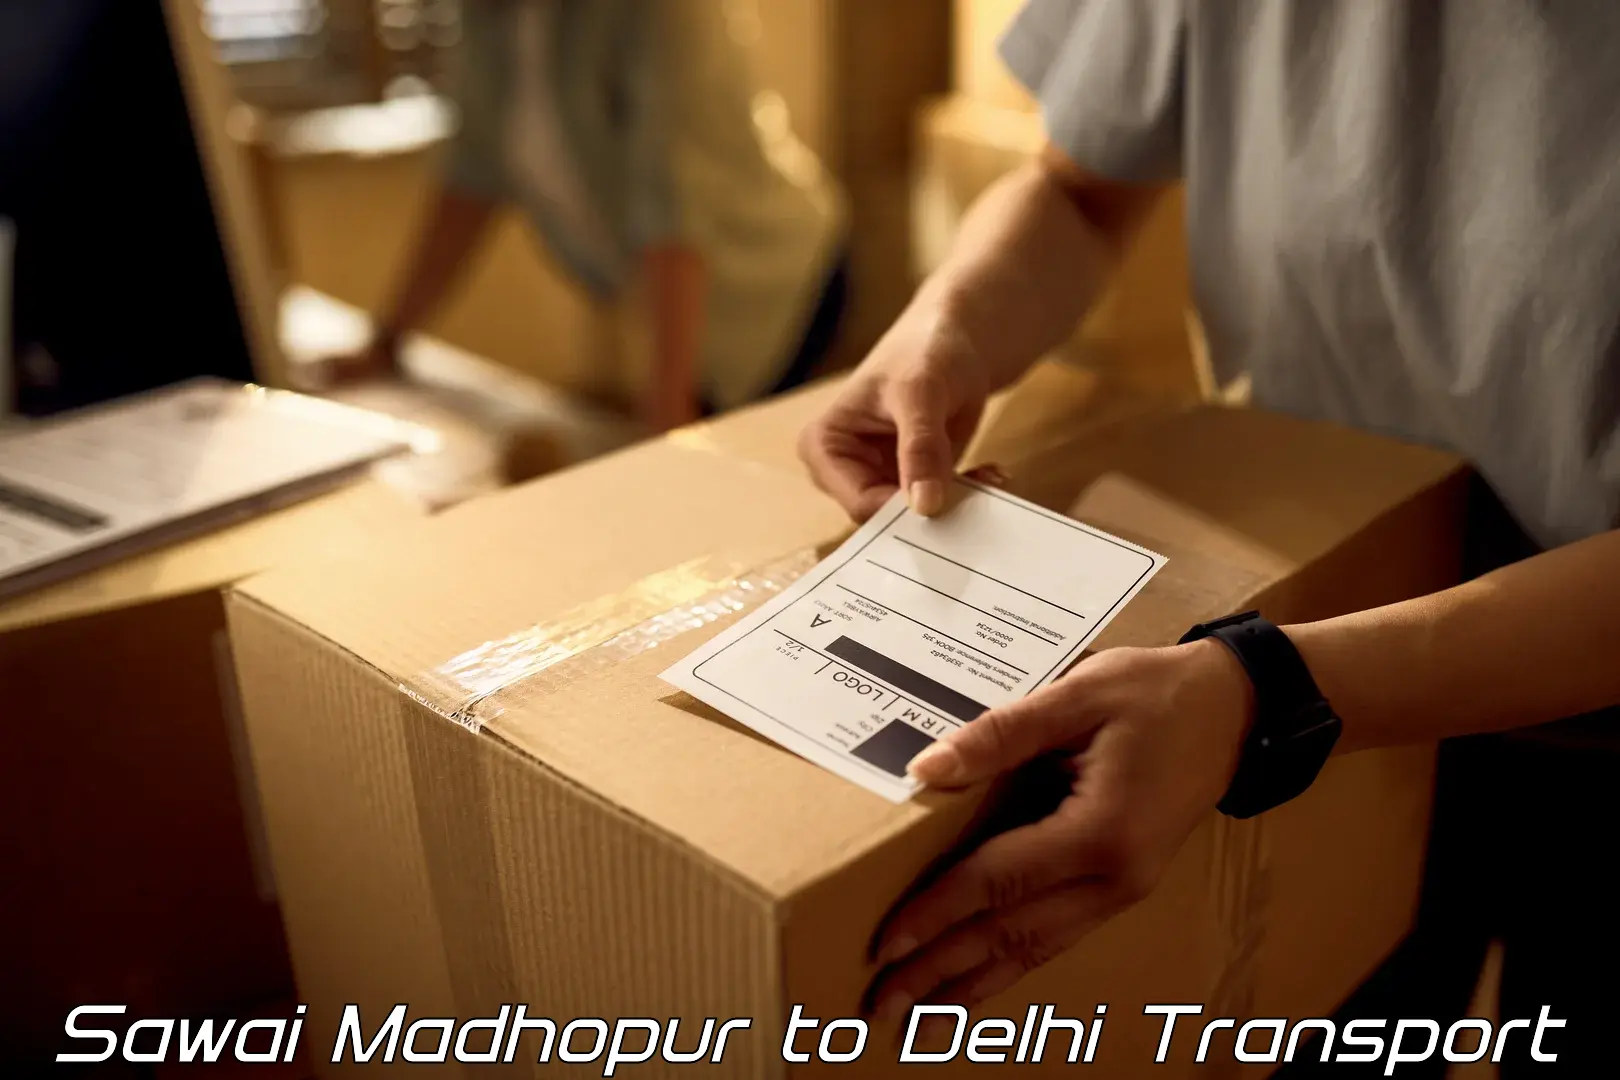 Nearest transport service Sawai Madhopur to Delhi